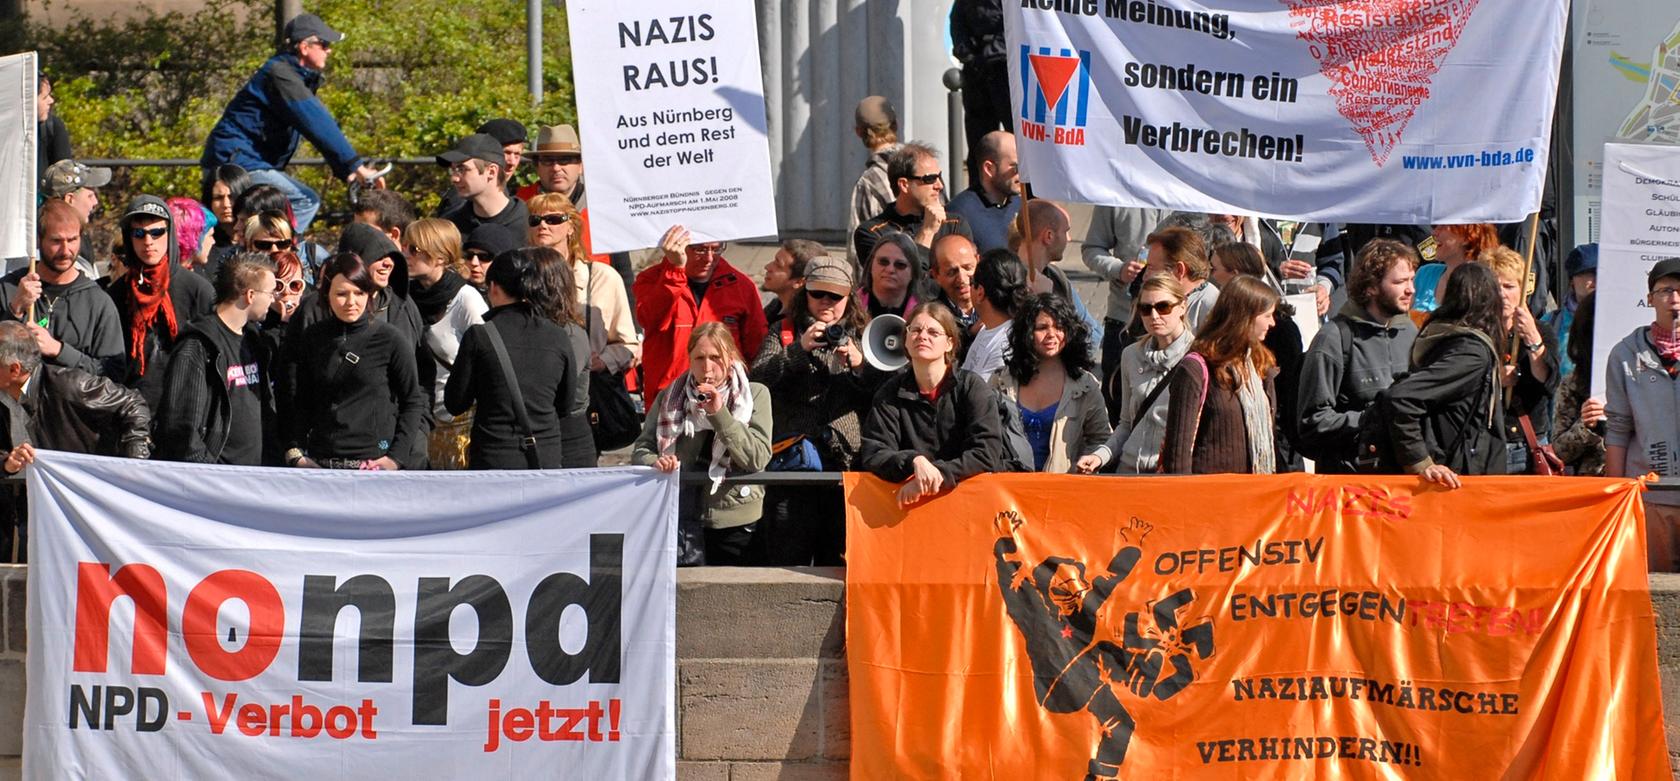 Die NPD macht am Mittwoch auf ihrer Deutschlandfahrt auch Halt in Nürnberg. Ein breites Bündnis demokratischer Kräfte ruft zu einer Gegendemonstration auf. Das Bild zeitg eine vergangene Anti-Nazi-Demo.